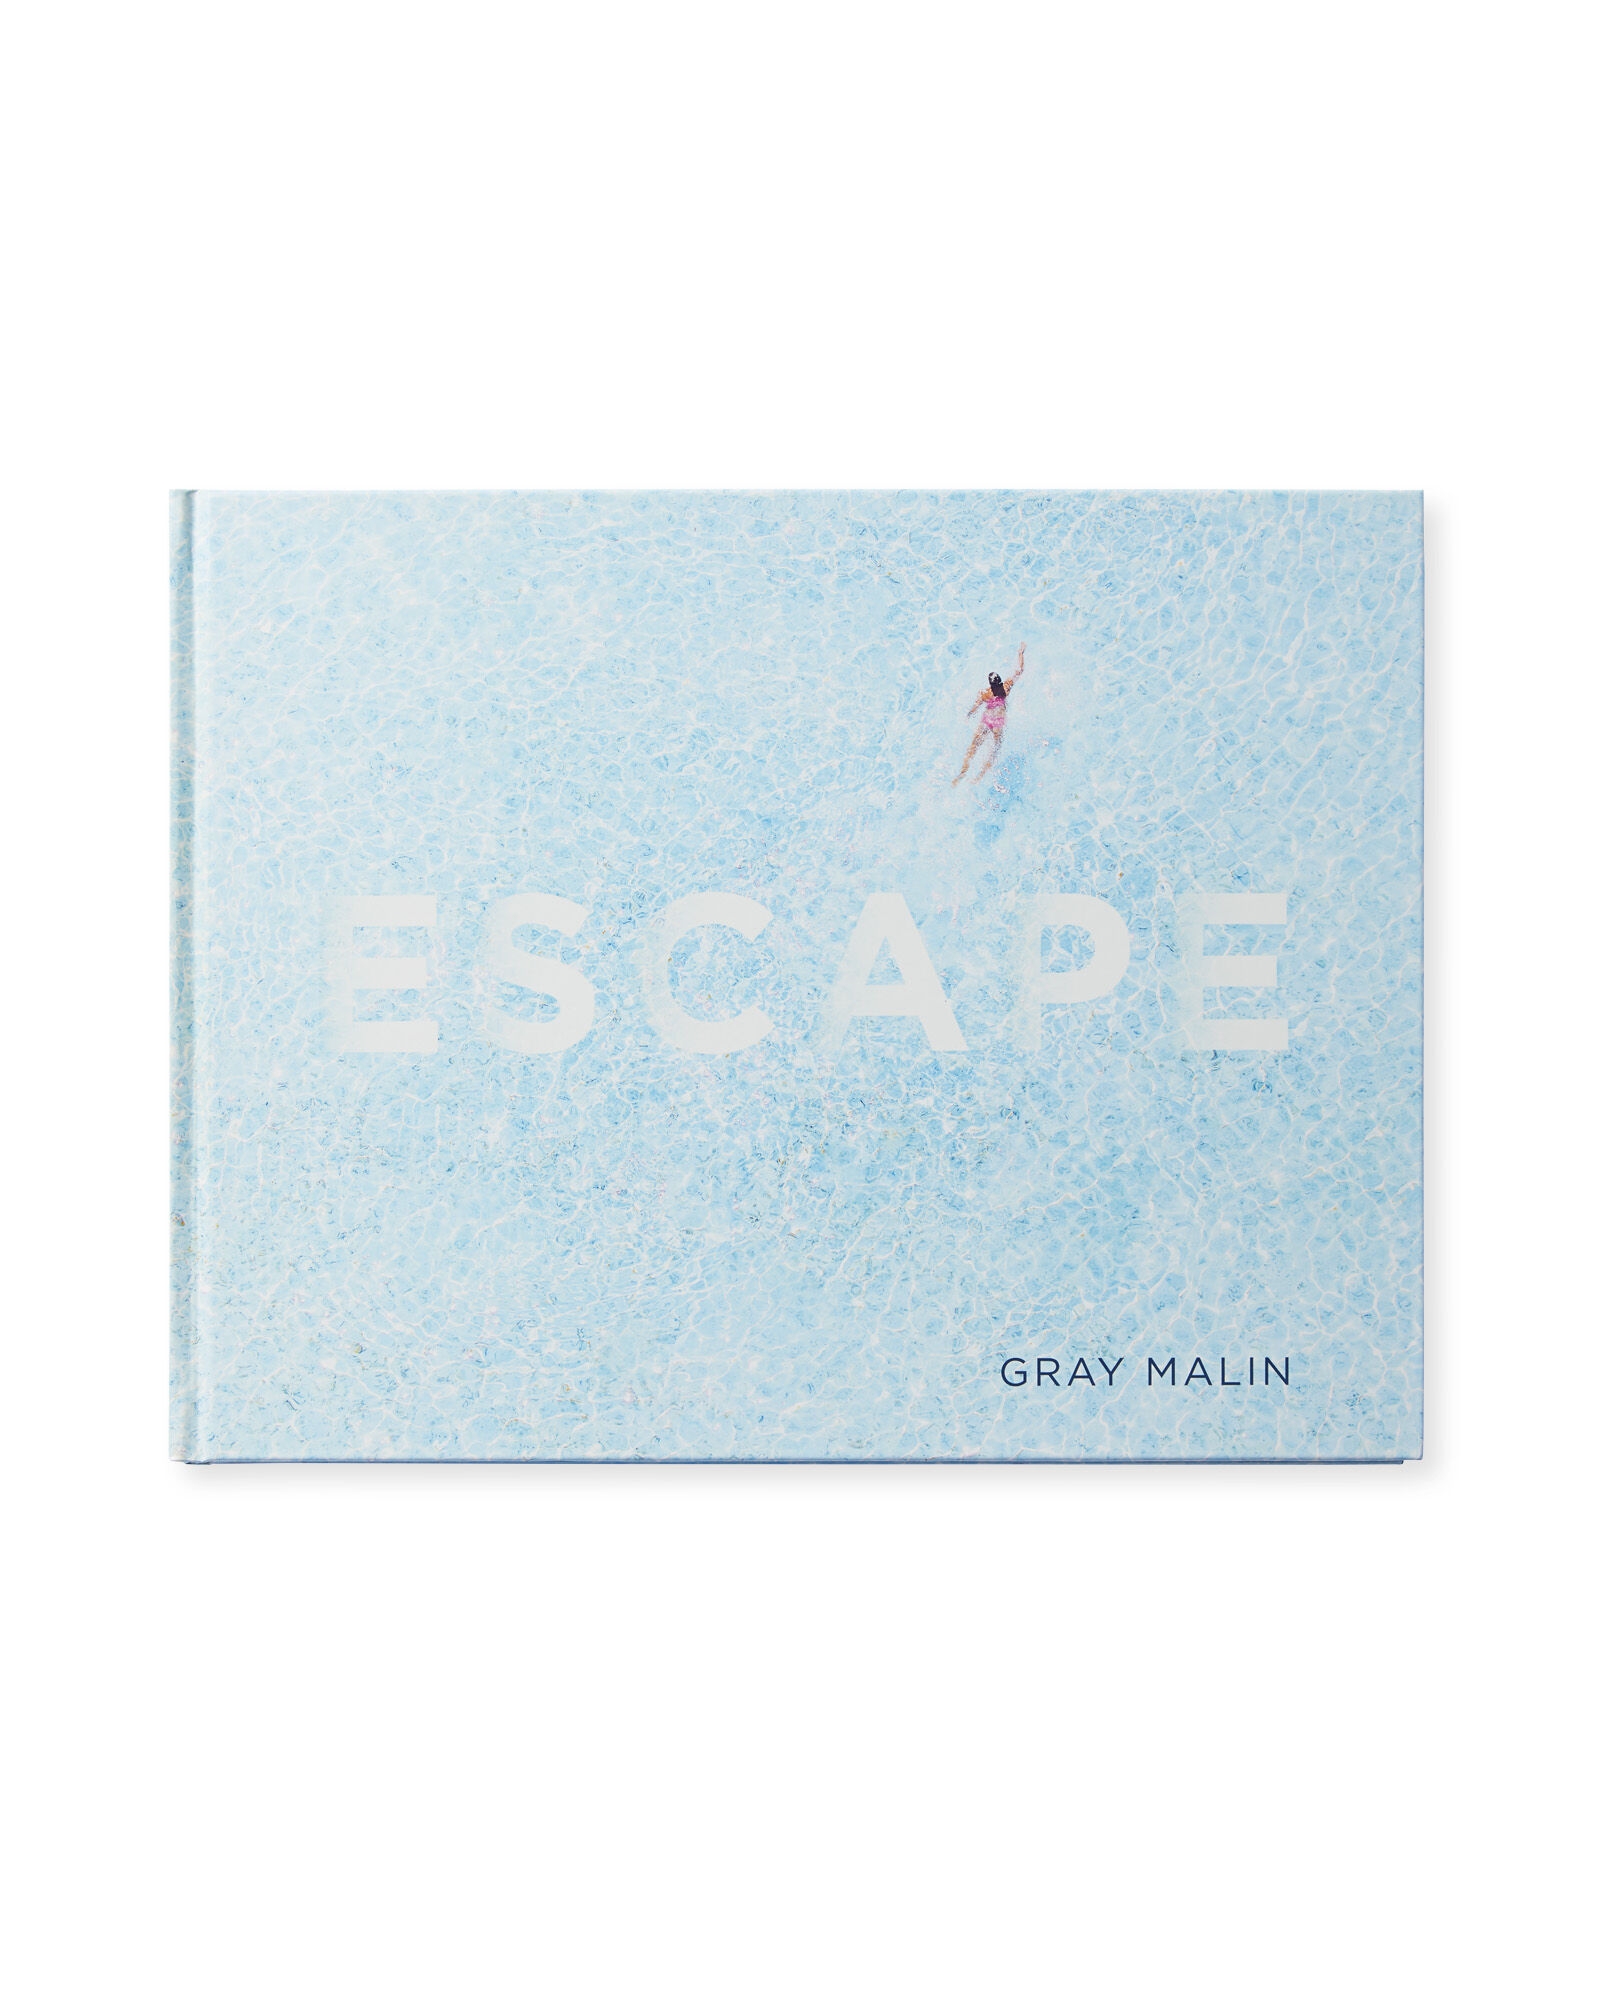 "Escape" by Gray Malin - Image 0